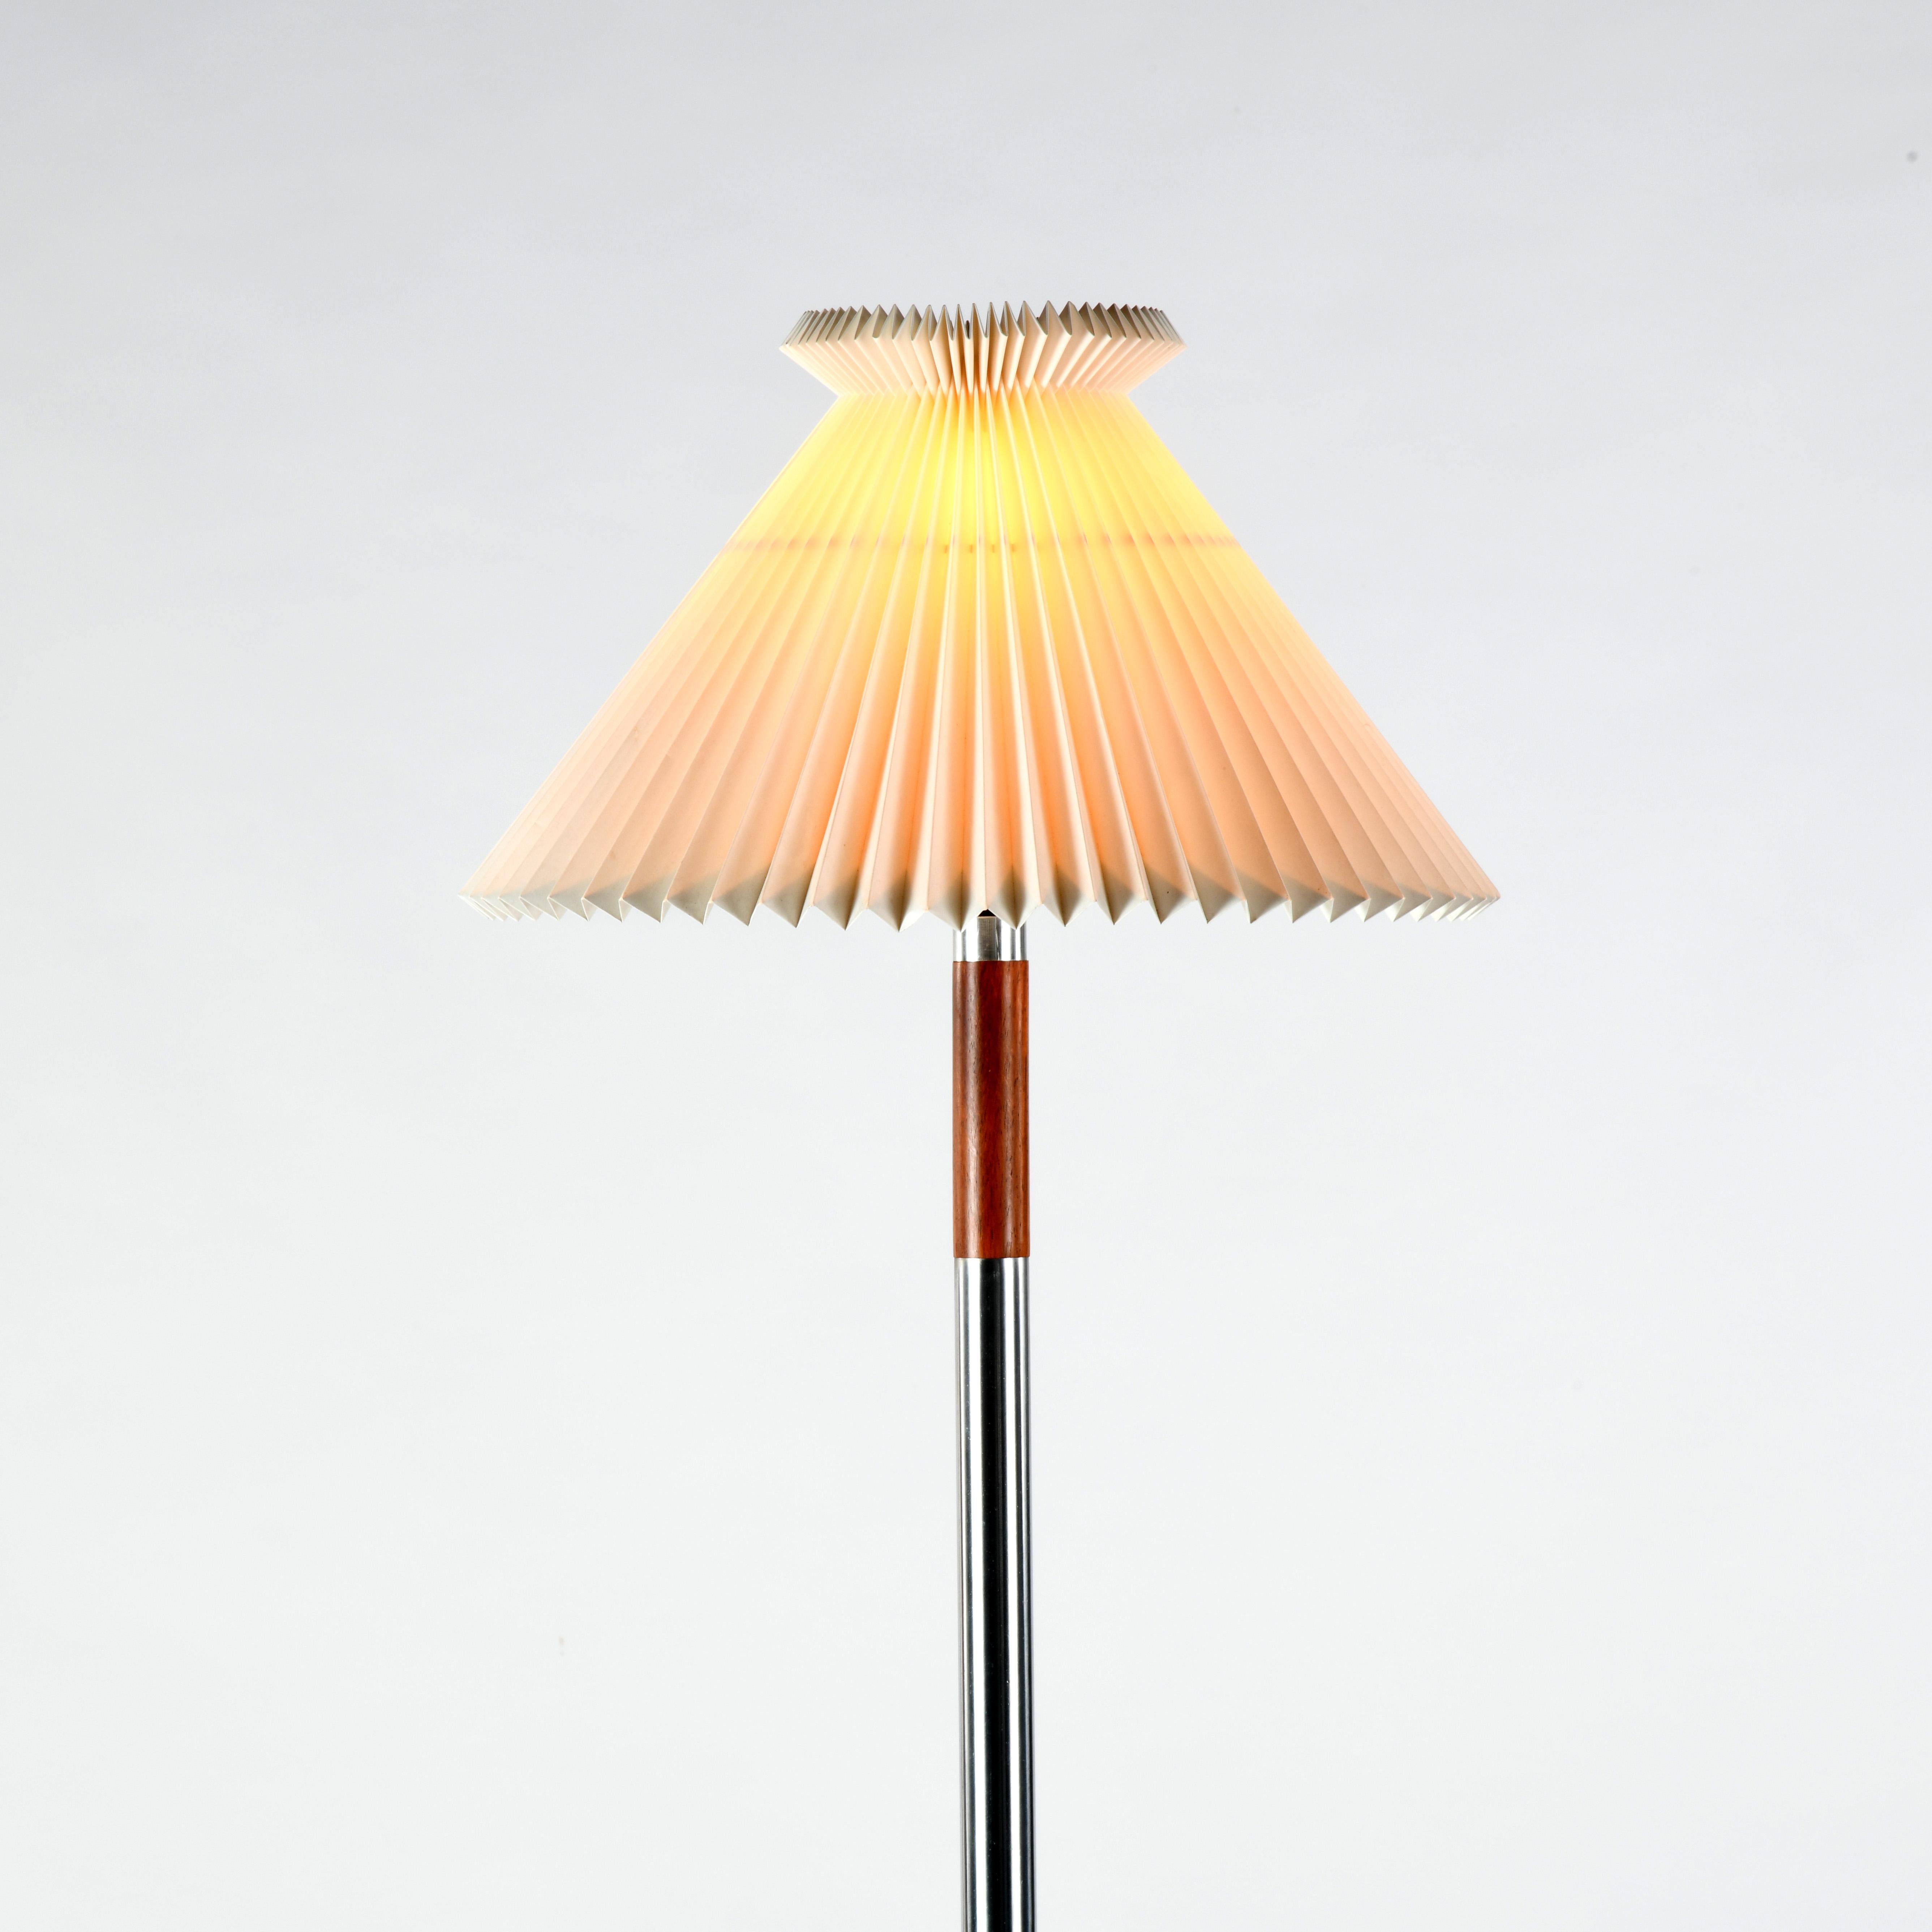 Danish Vintage scandinavian floor lamp designed by Jo Hammerborg in the 60s